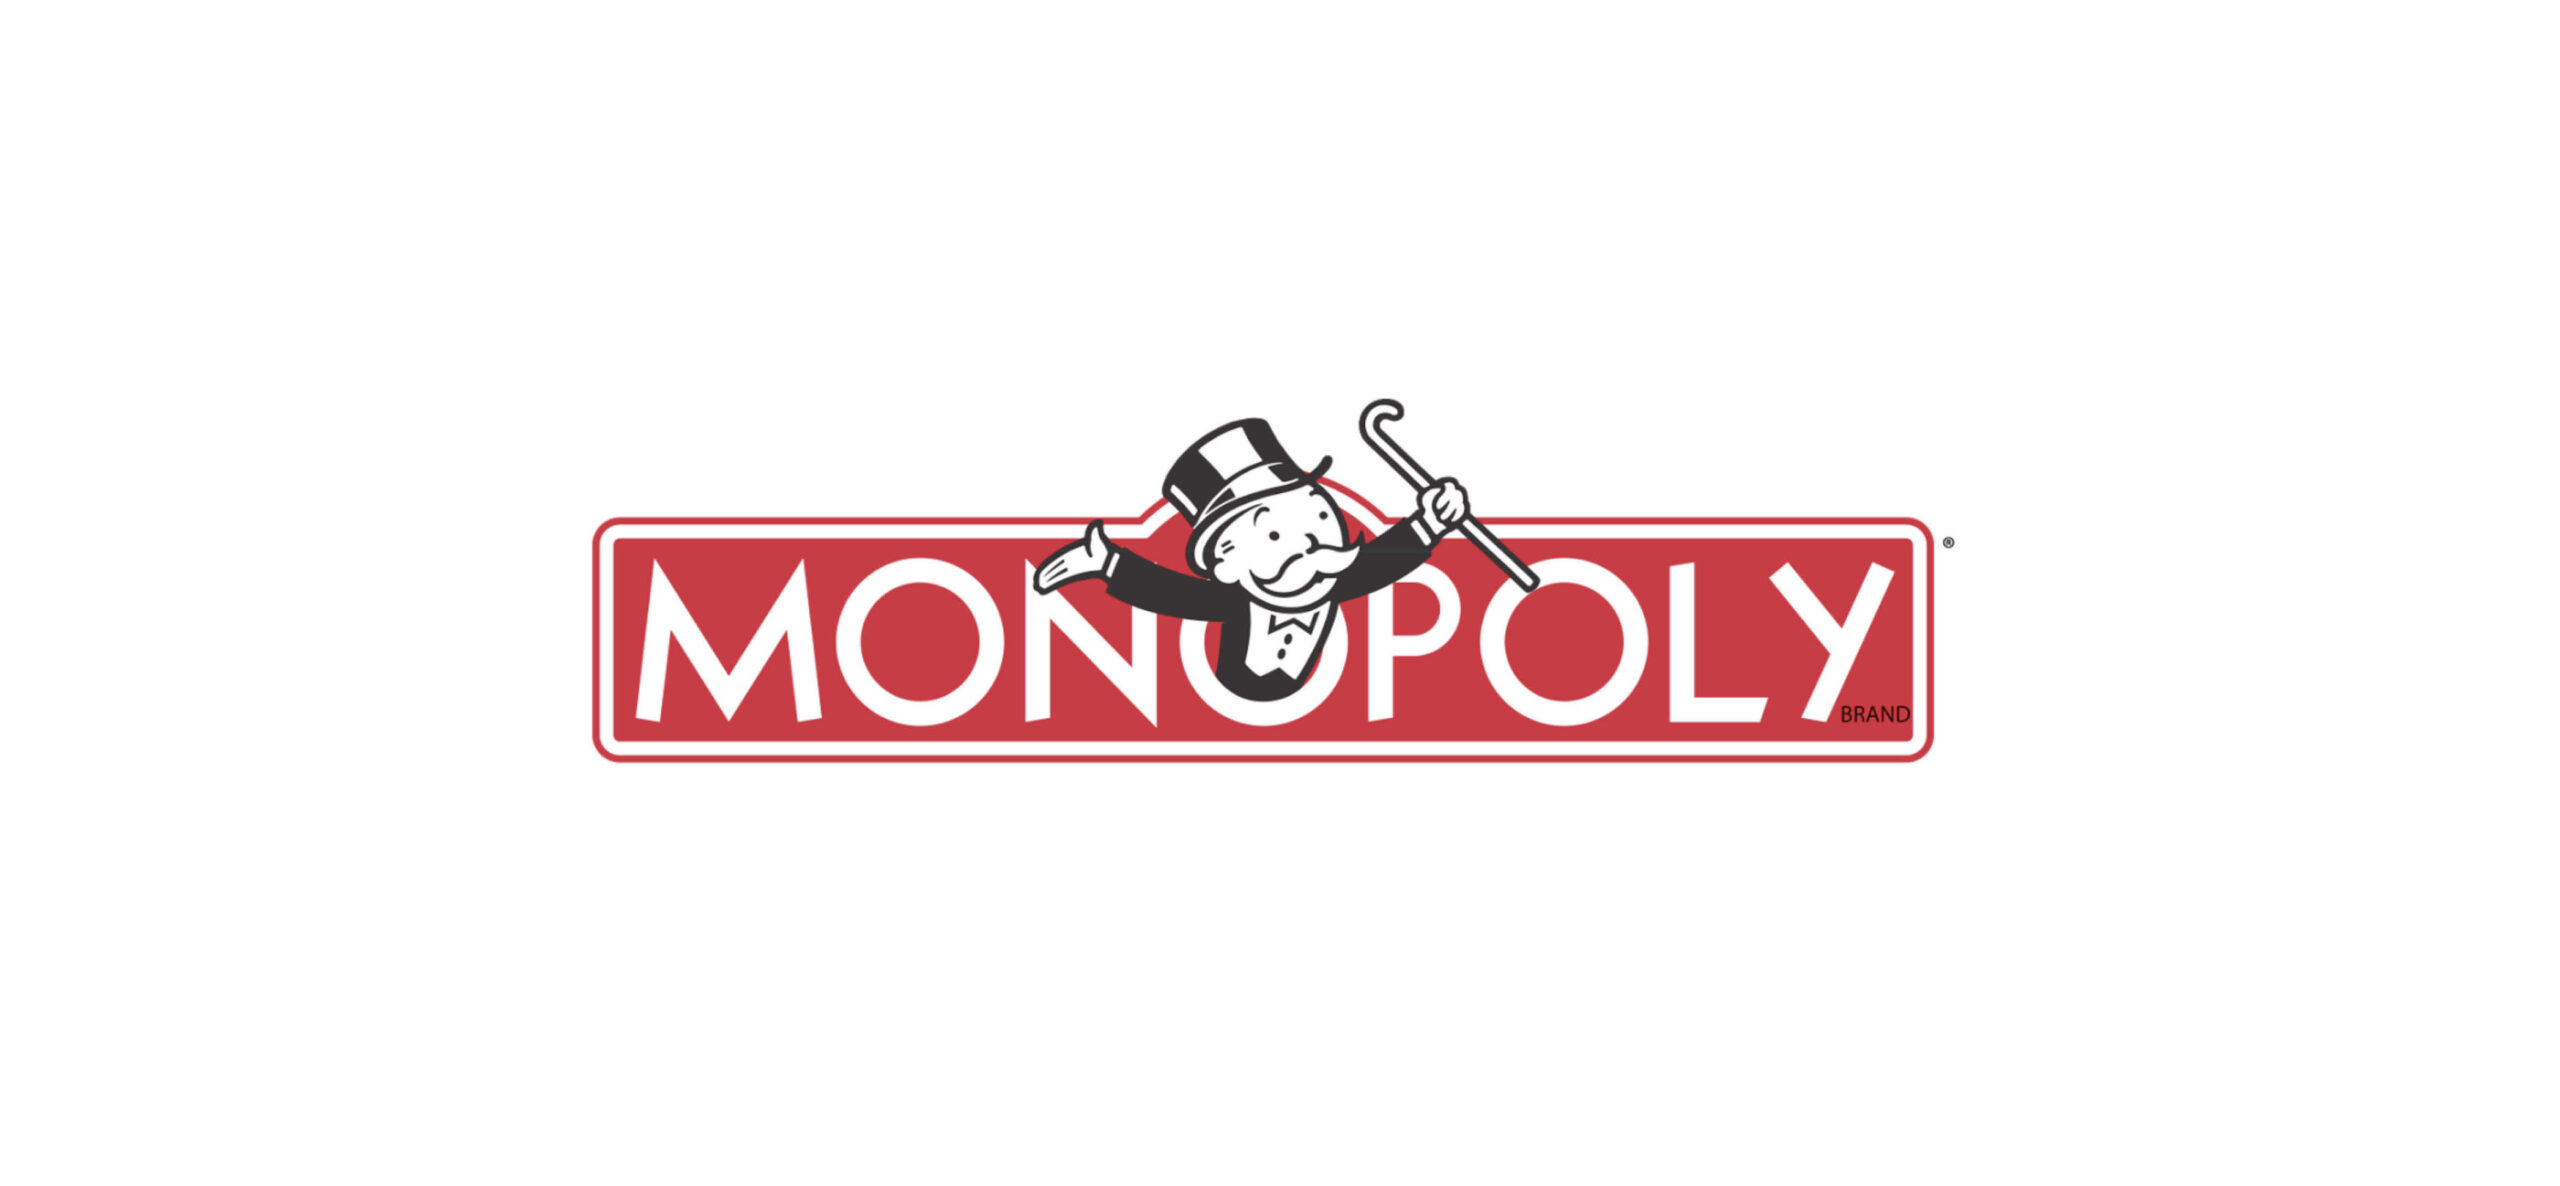 logo monopoly